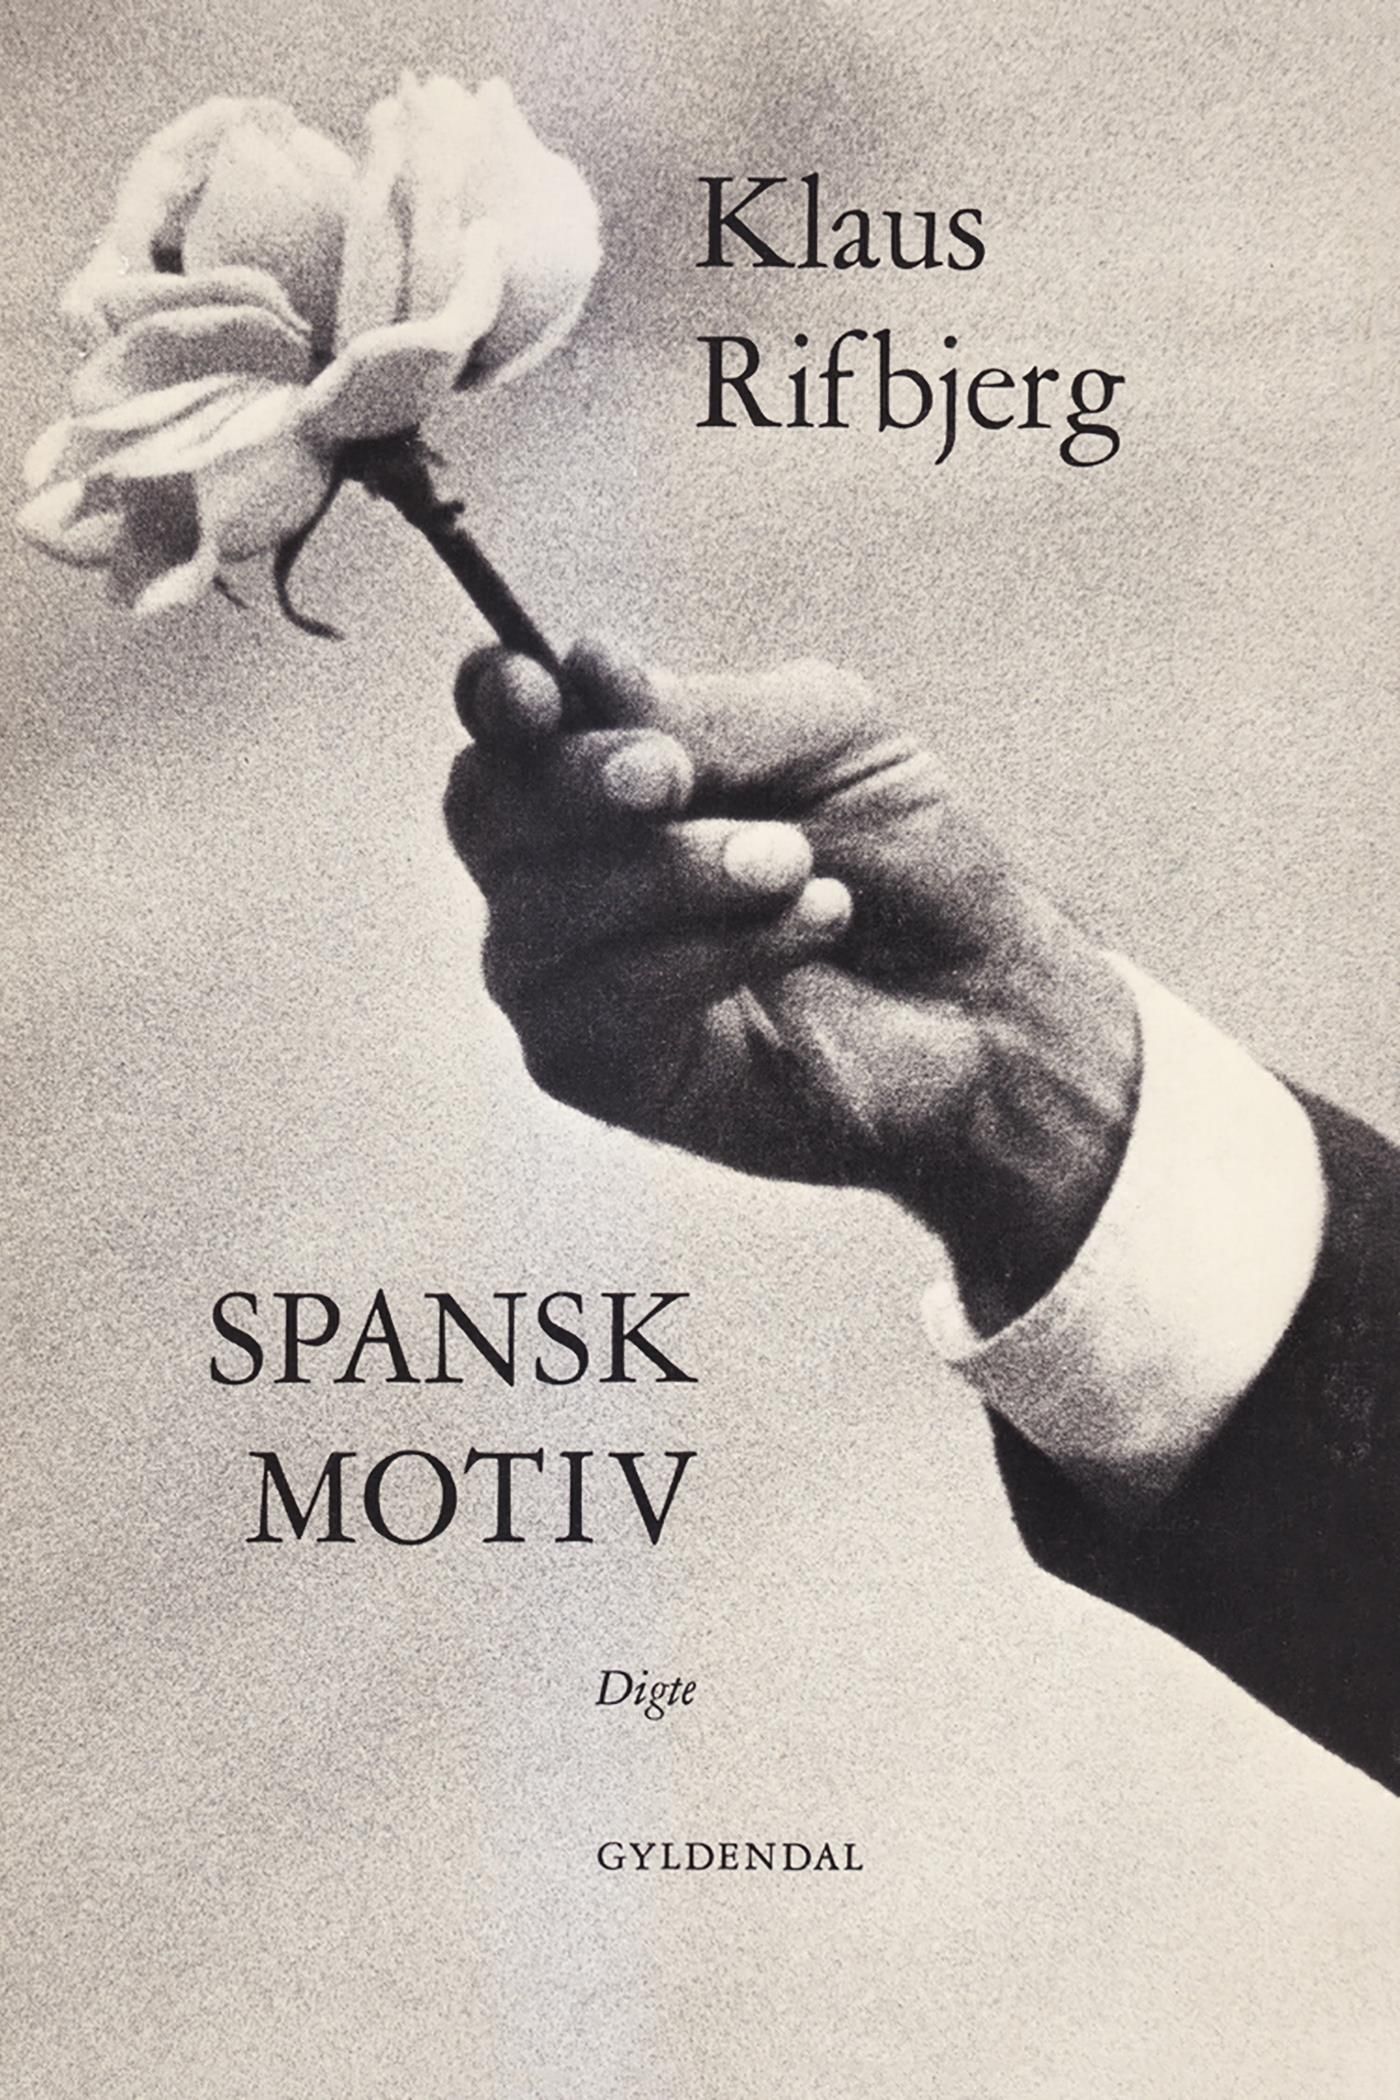 Spansk motiv, e-bok av Klaus Rifbjerg